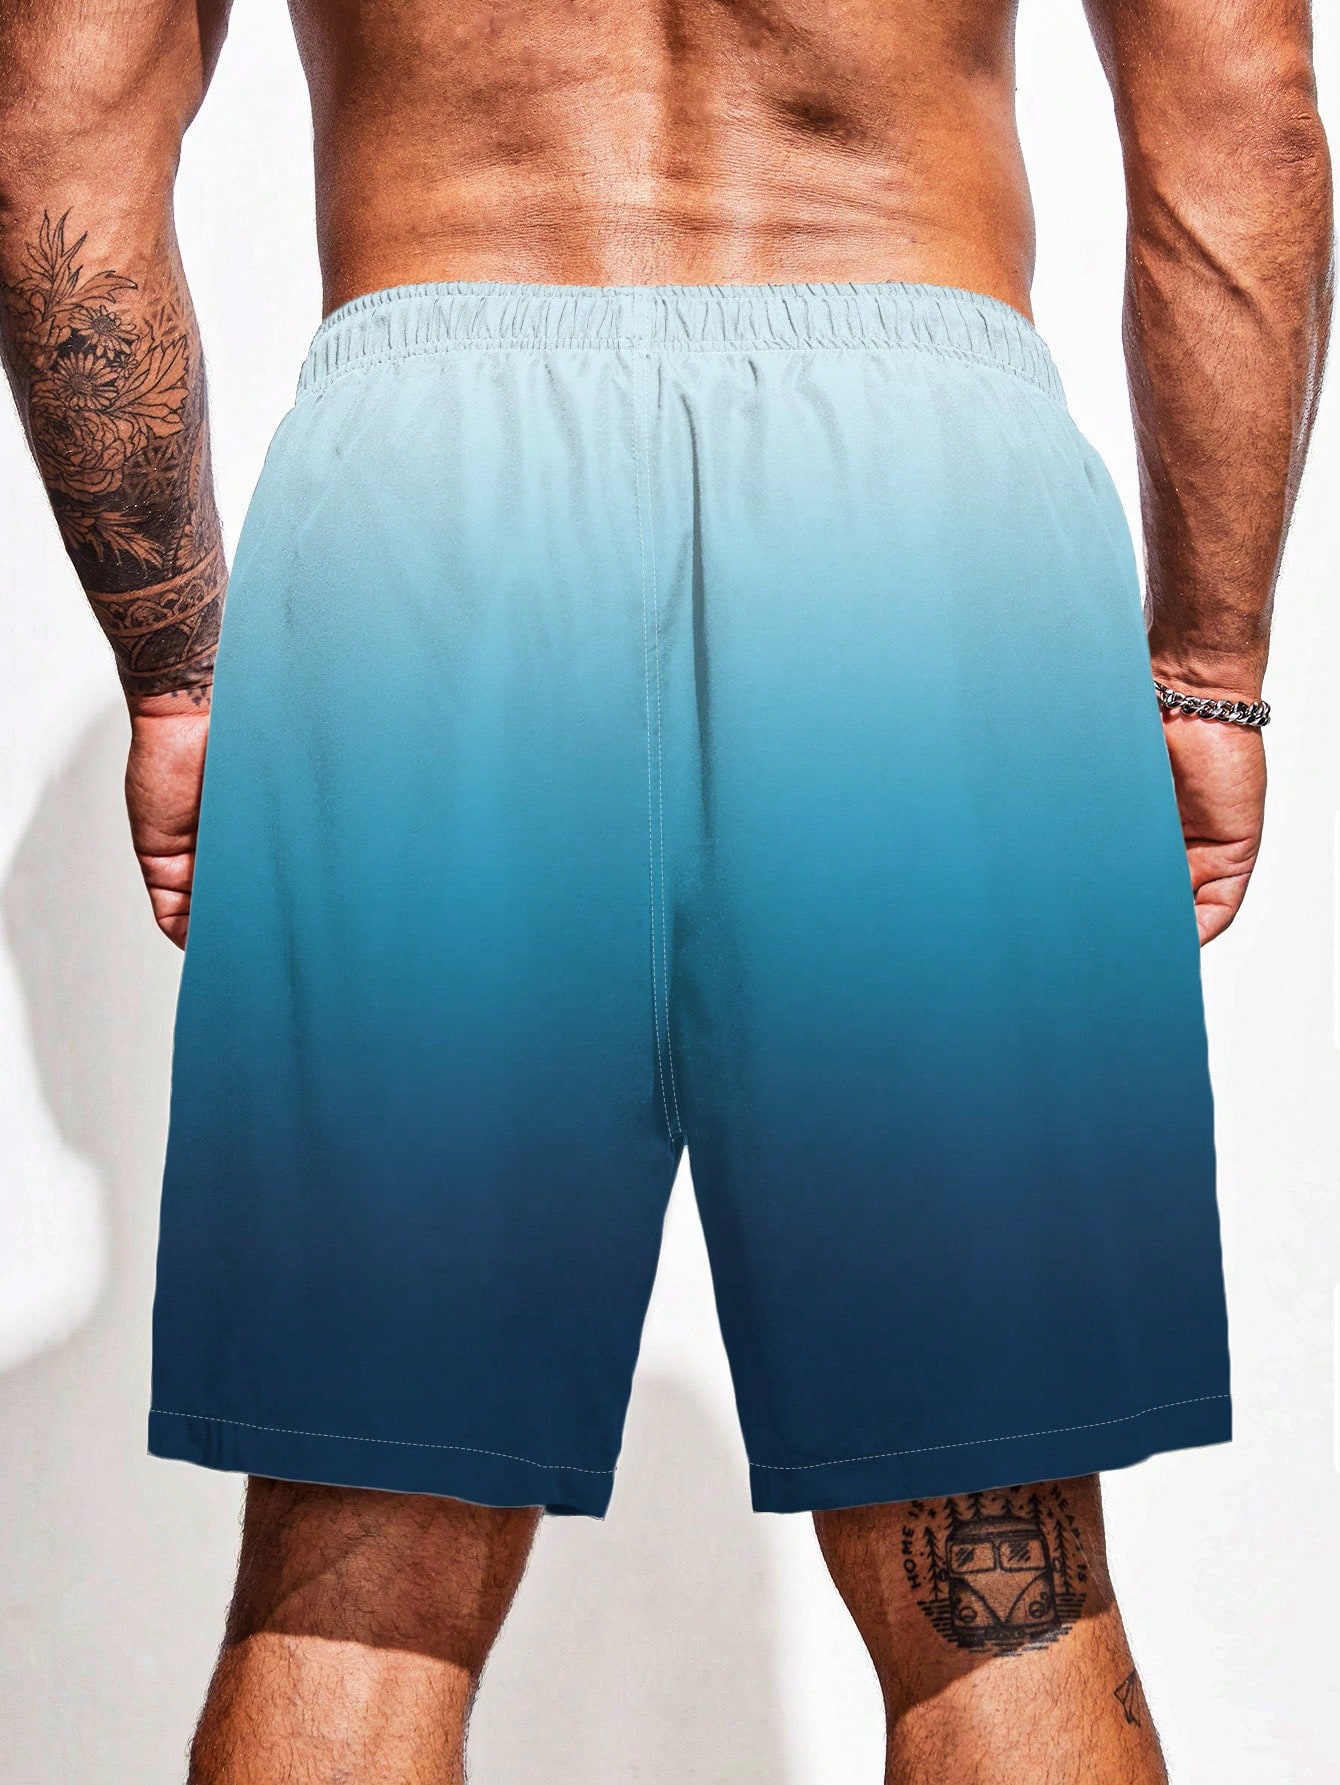 Мужские пляжные шорты больших размеров с градиентом цвета и завязками на талии, многоцветный